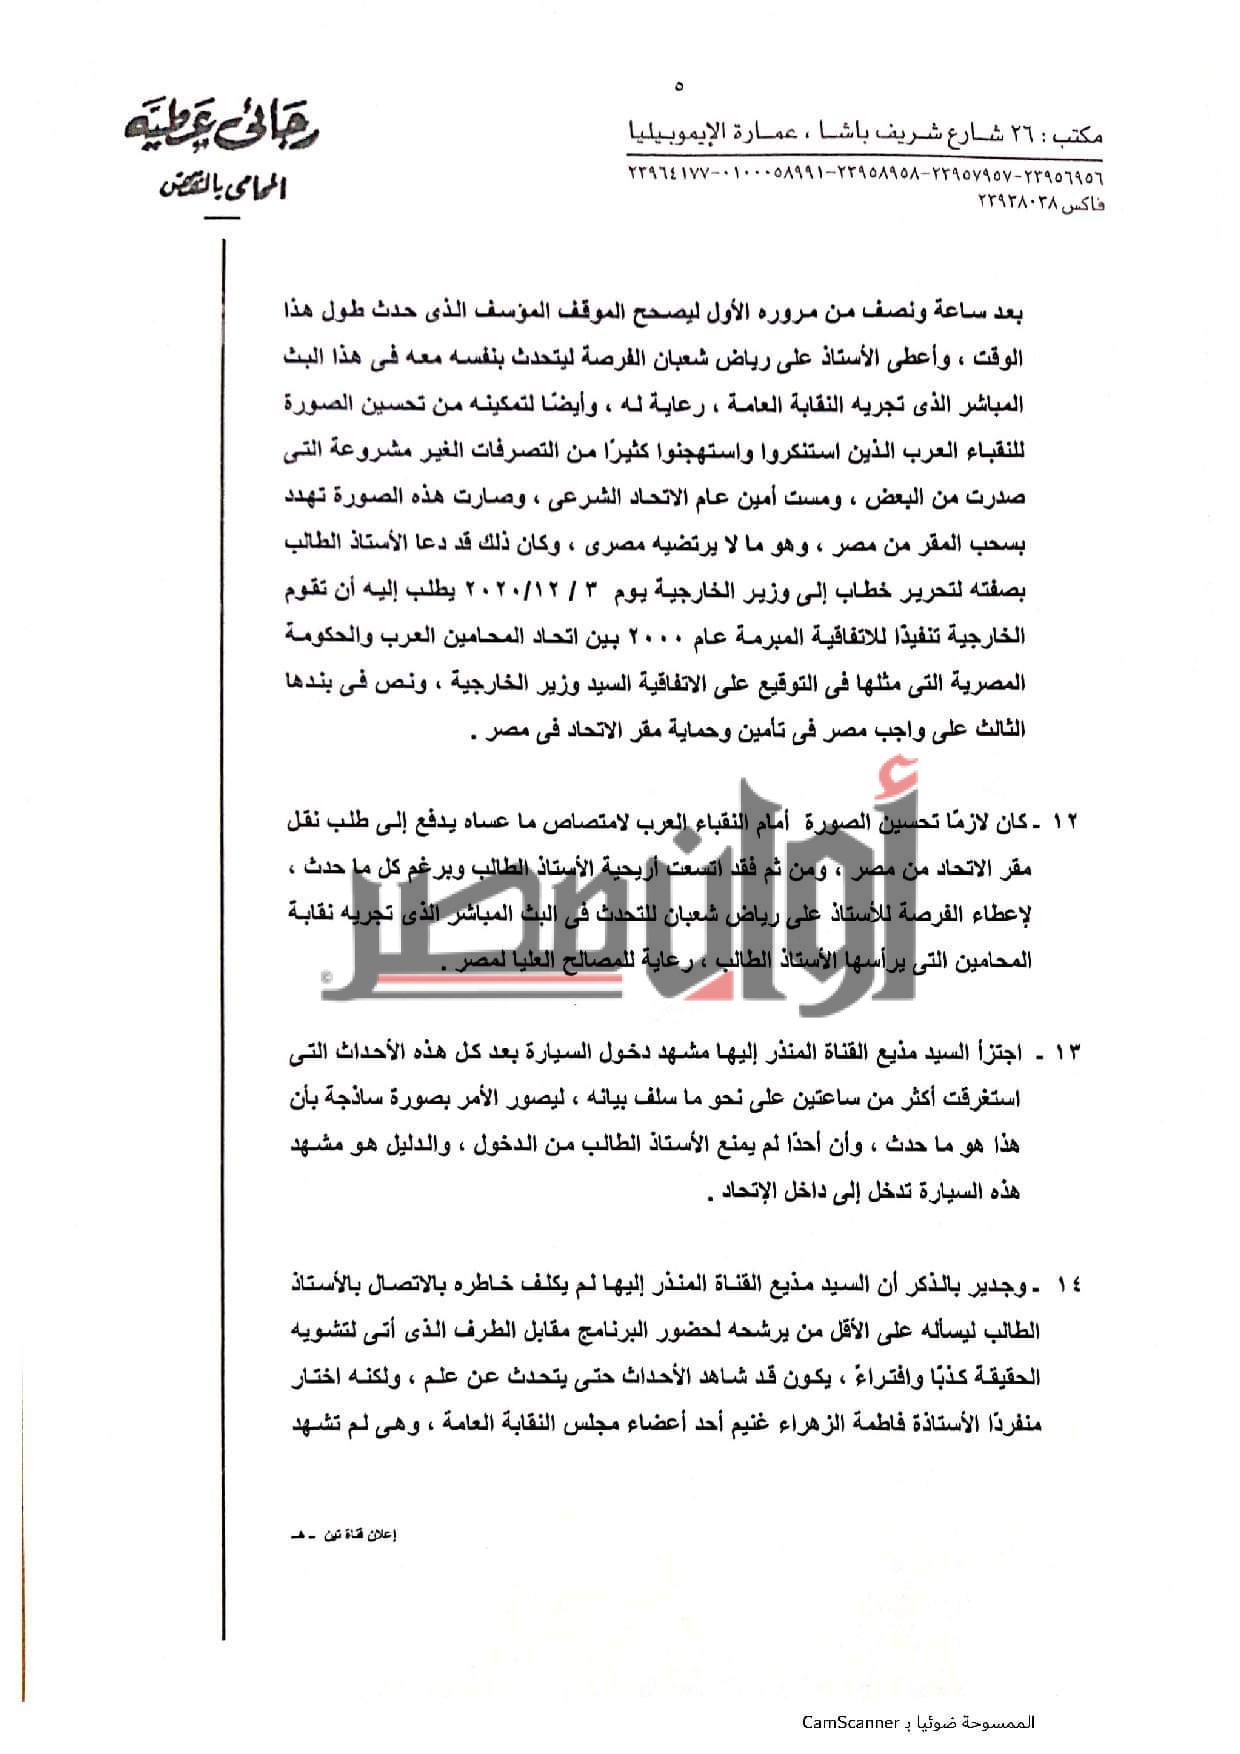 أوان مصر تنفرد بـ المستندات.. القصة الكاملة لازمة رجائي عطيه مع اتحاد المحامين العرب 2